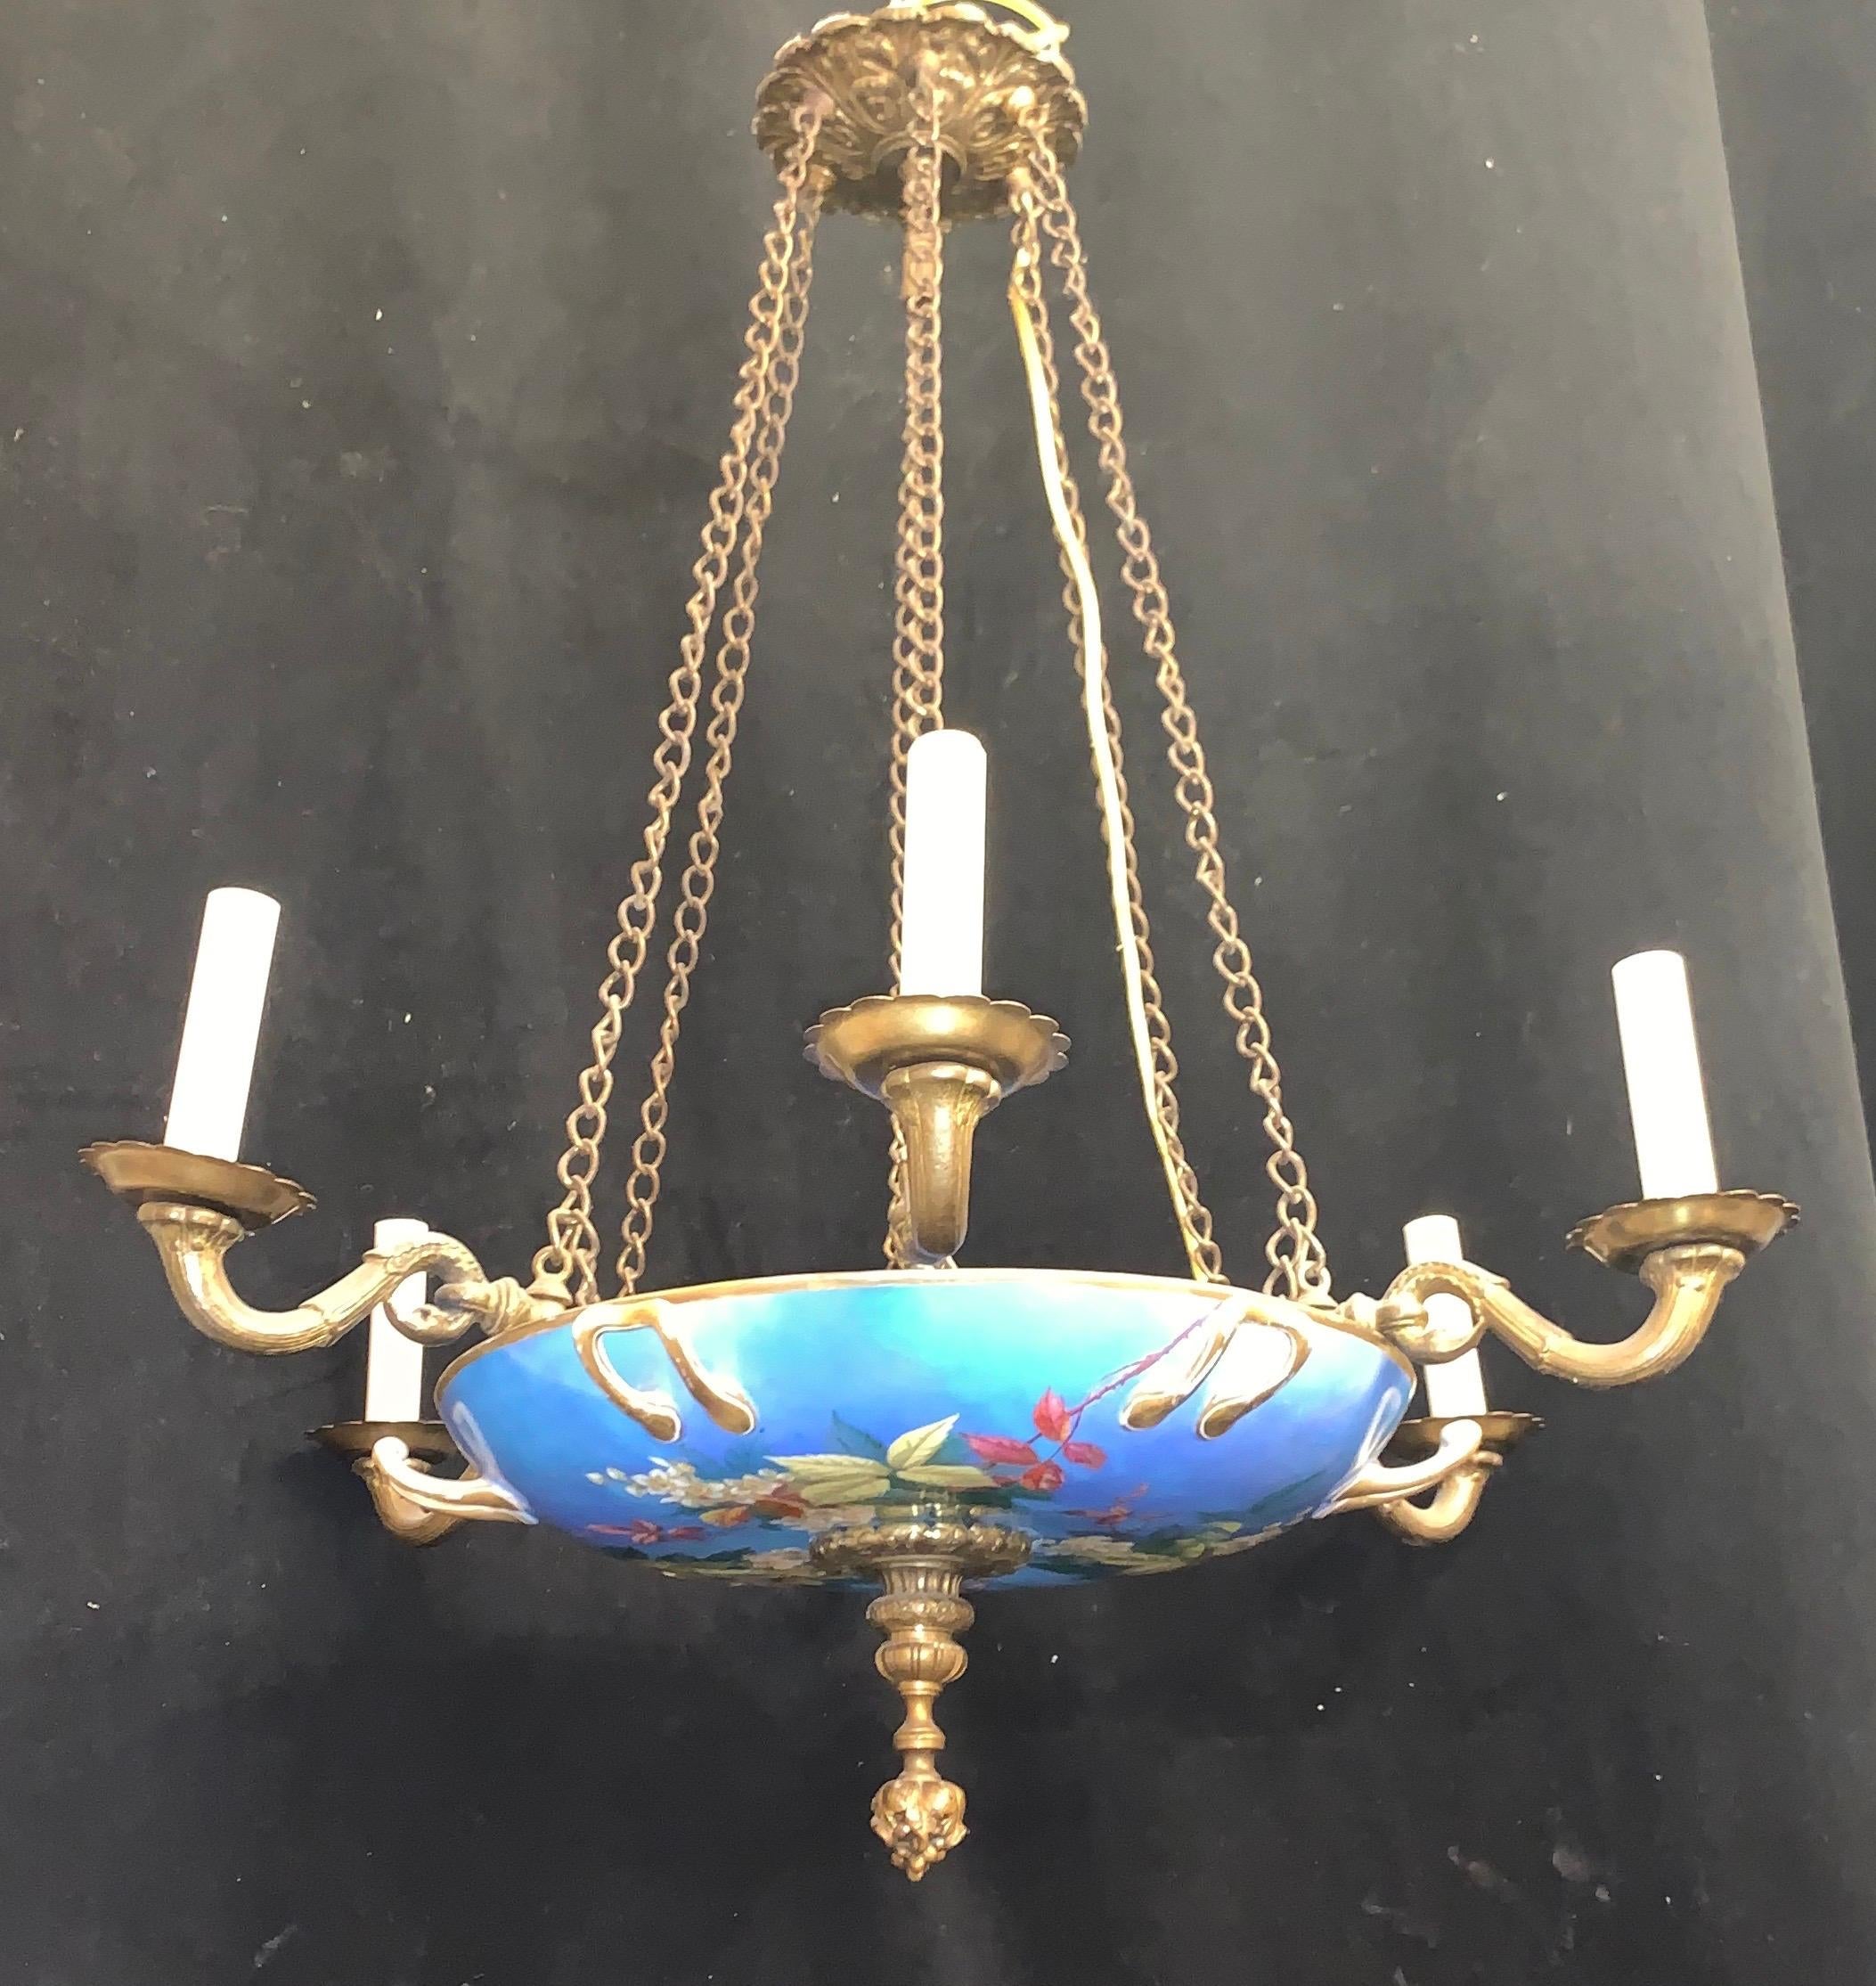 Un merveilleux bronze français et bol en porcelaine peint à la main chintz vieux Paris floral 6 candélabres lustre de lumière
La hauteur est réglable en ajoutant ou en retirant la chaîne.